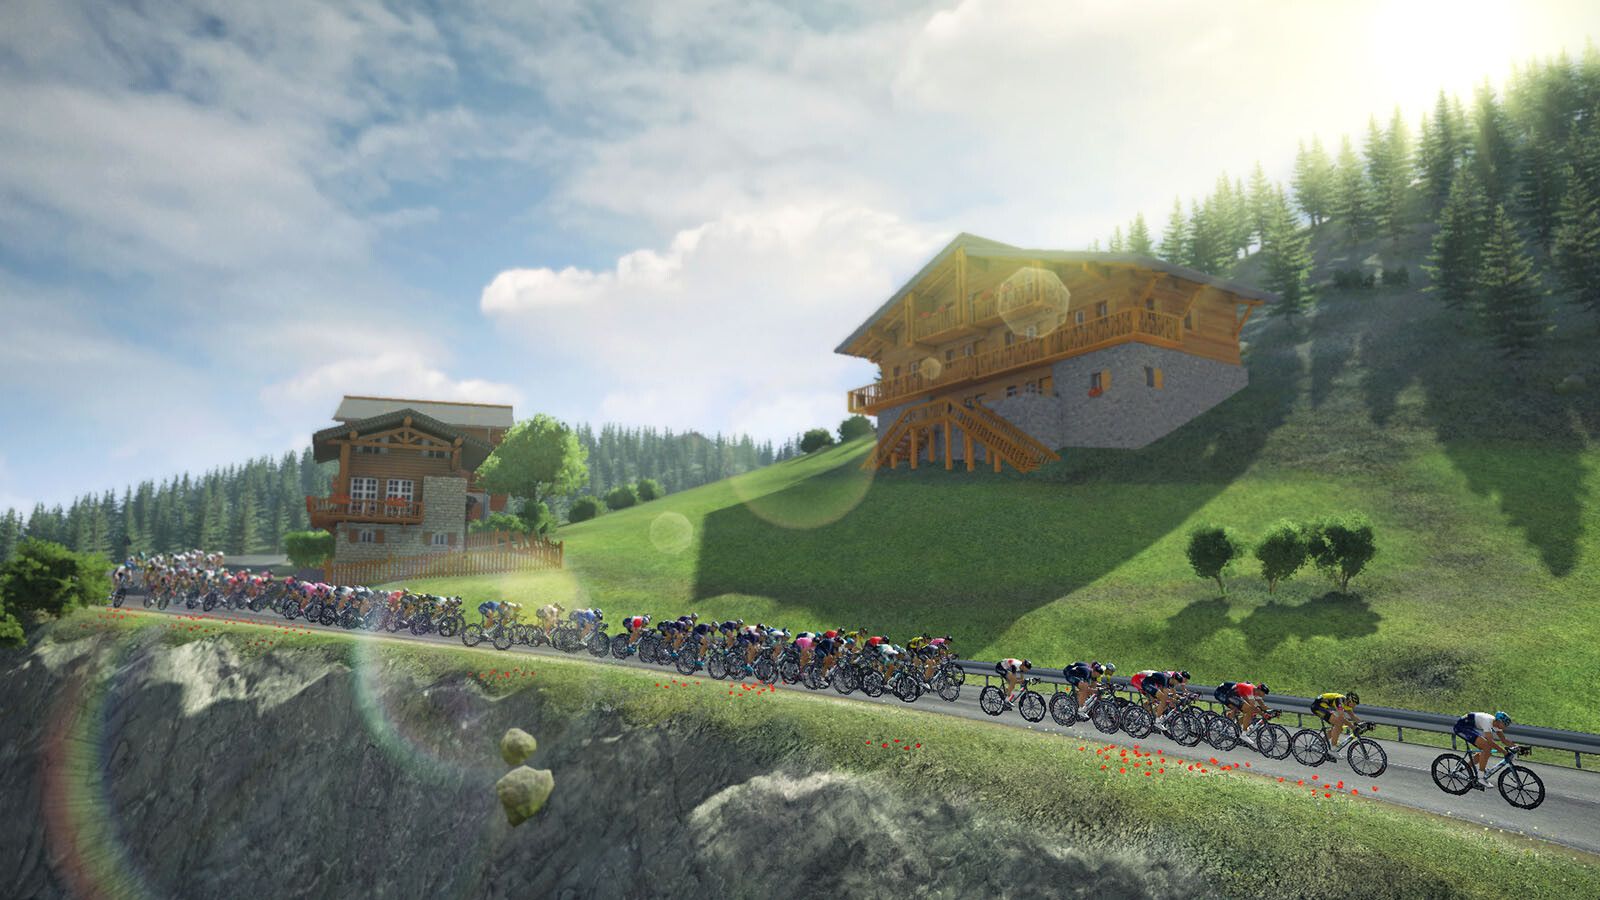 Tour de France 2021 Steam Key for PC